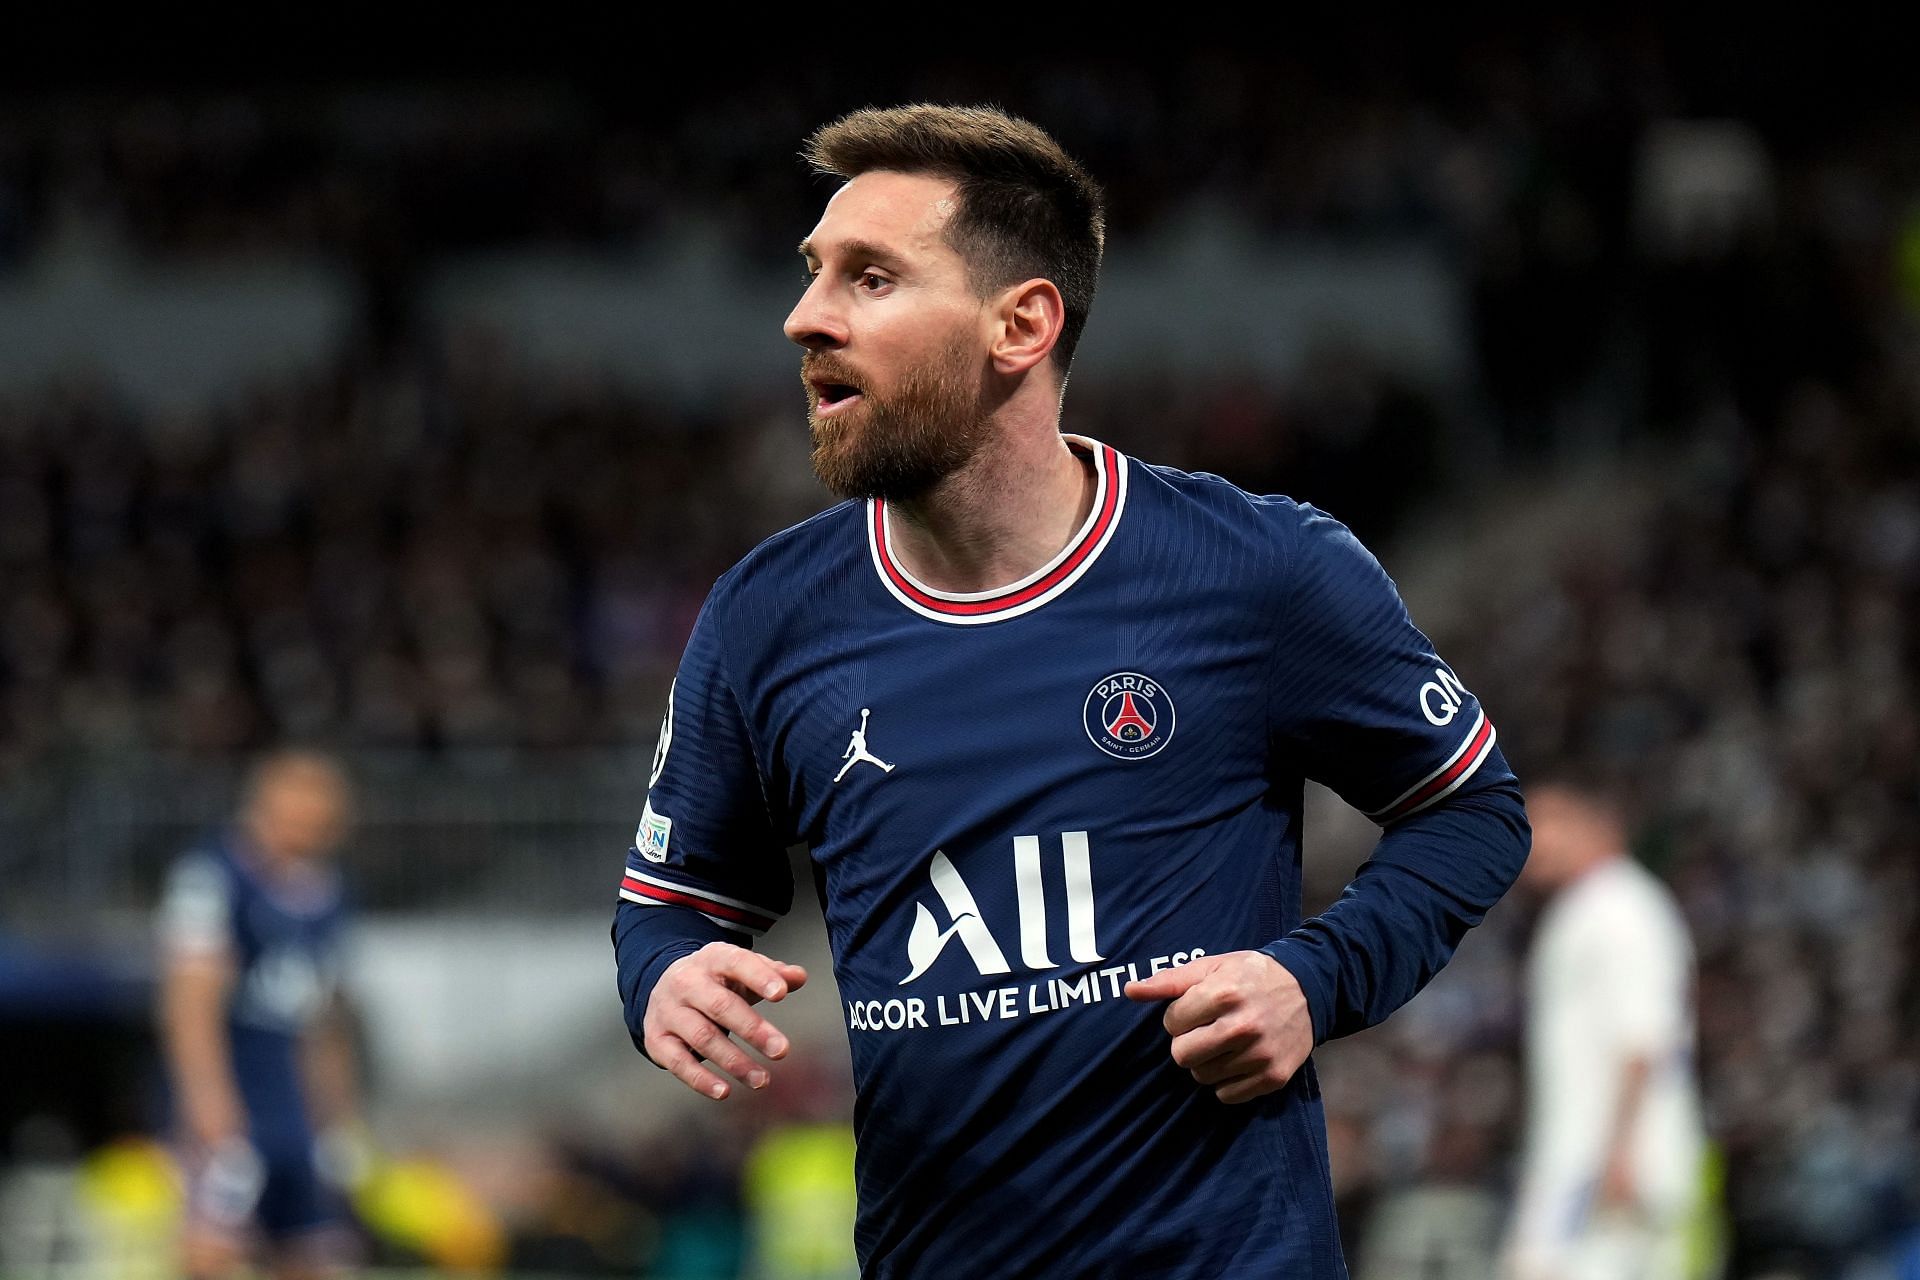 Lionel Messi endured a difficult debut season at the Parc des Princes.